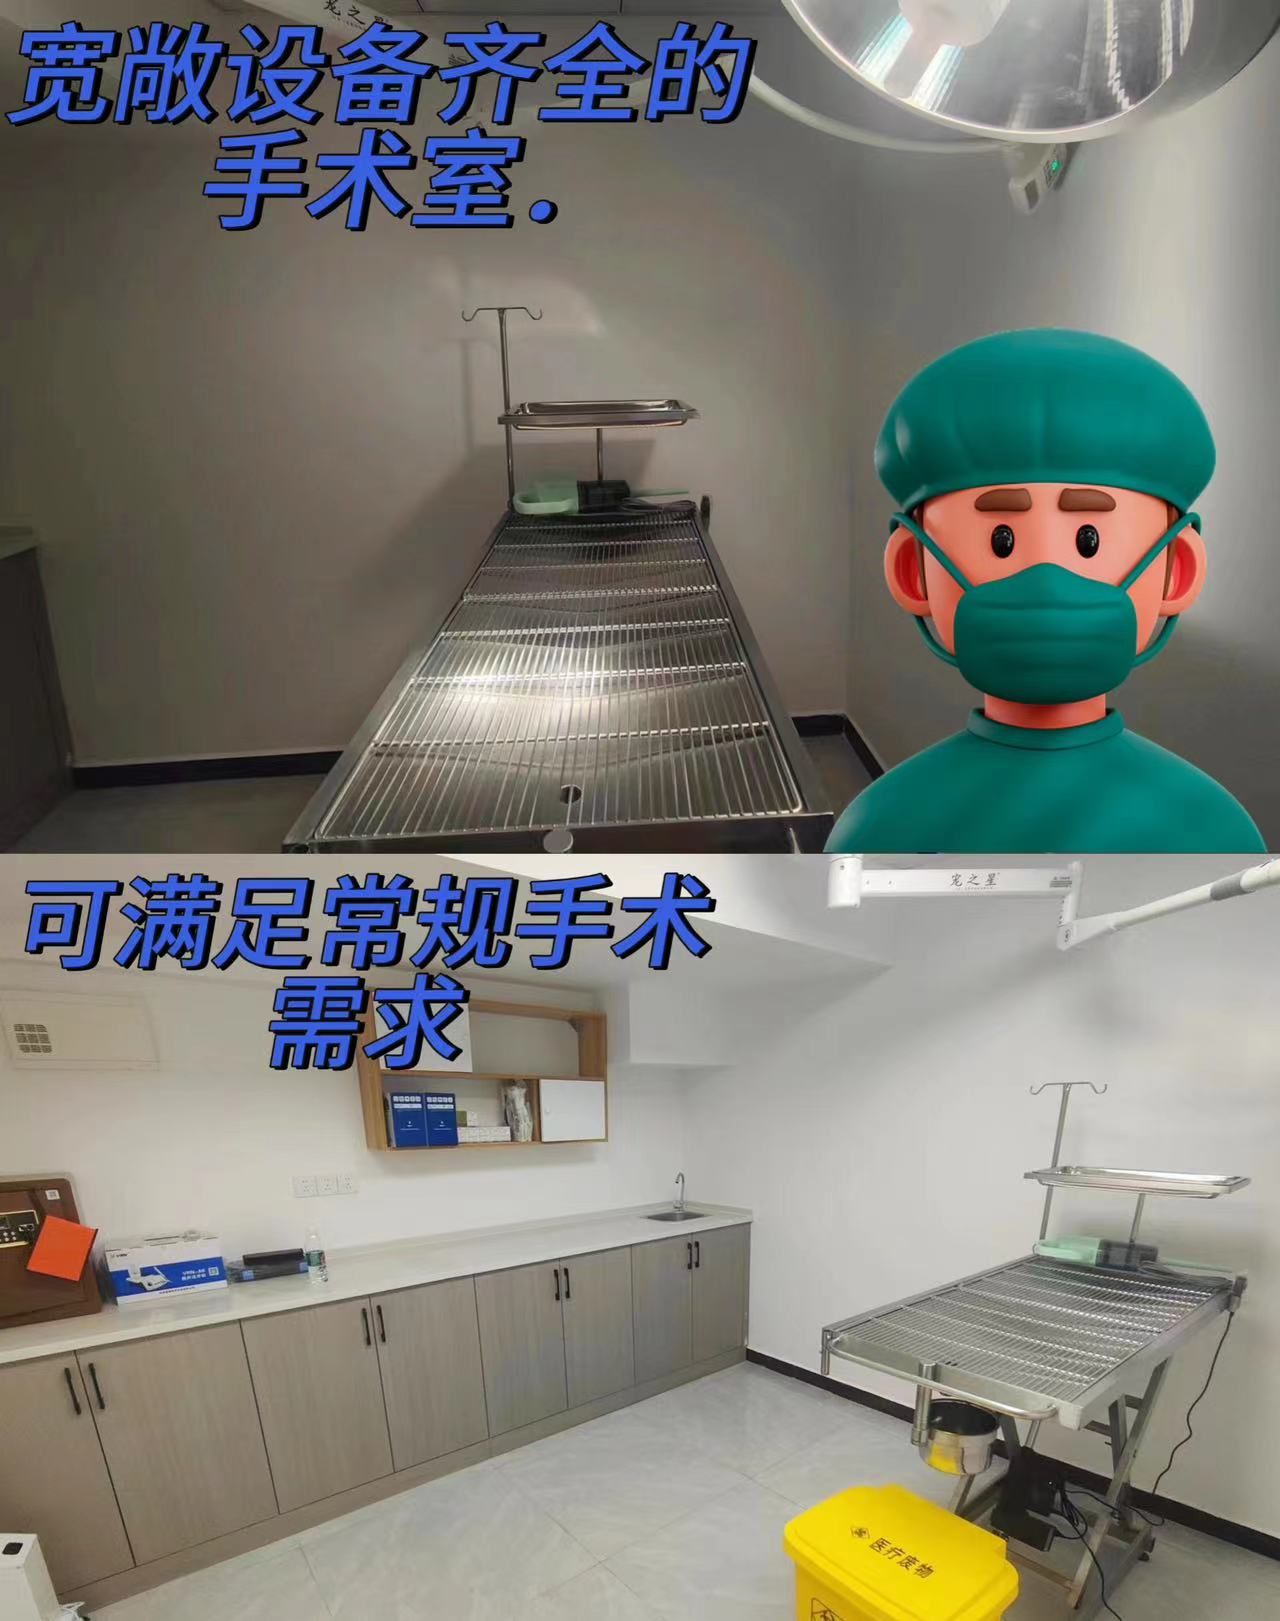 重庆九龙坡区 140平 宠物医院 18万 对外转让承包